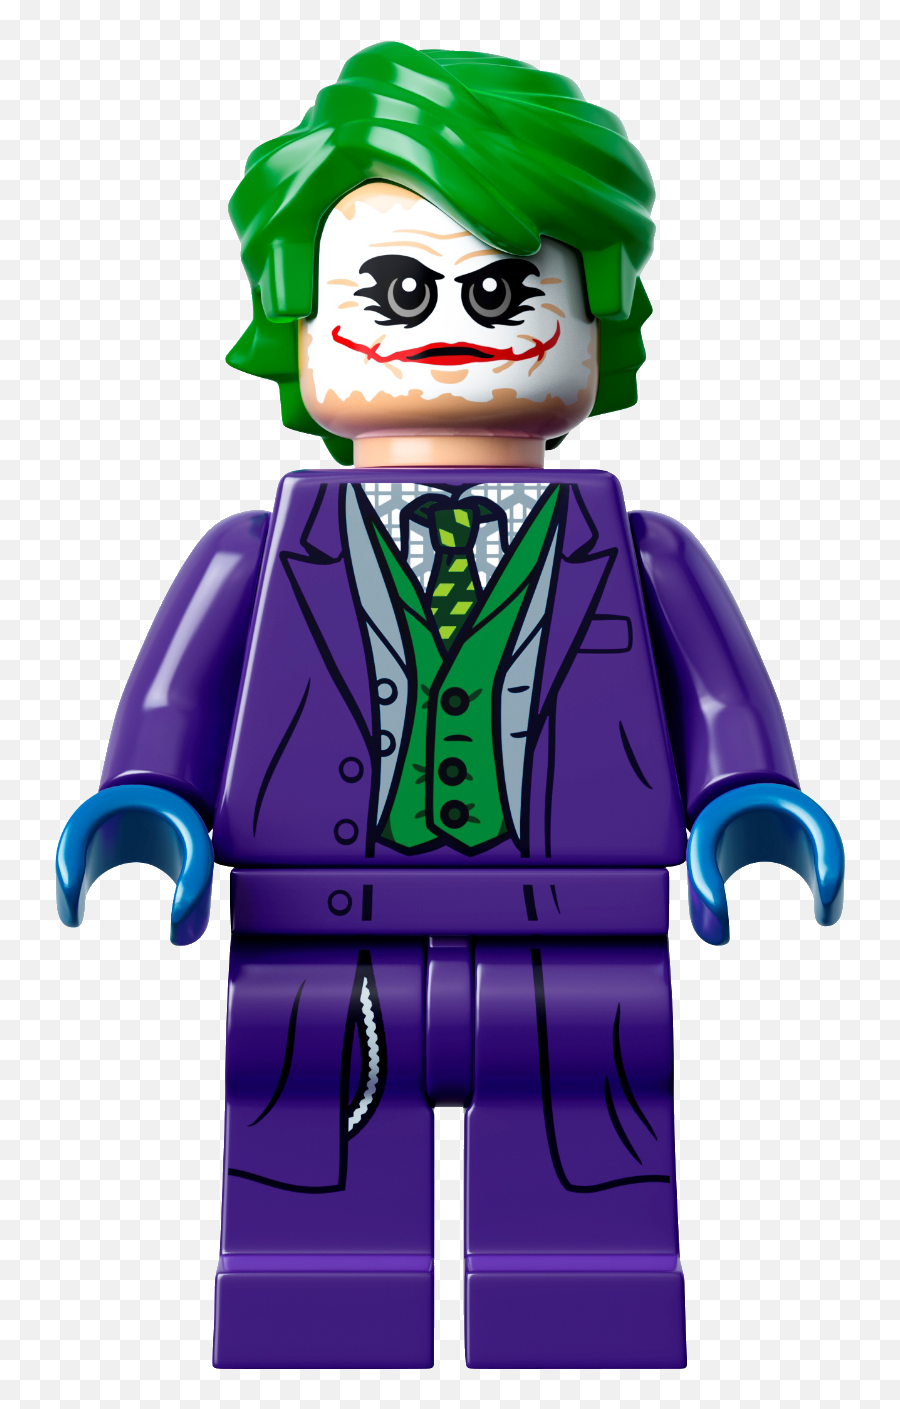 The Joker The Dark Knight Cjdm1999 Lego Dimensions Emoji,Dark Knight Png